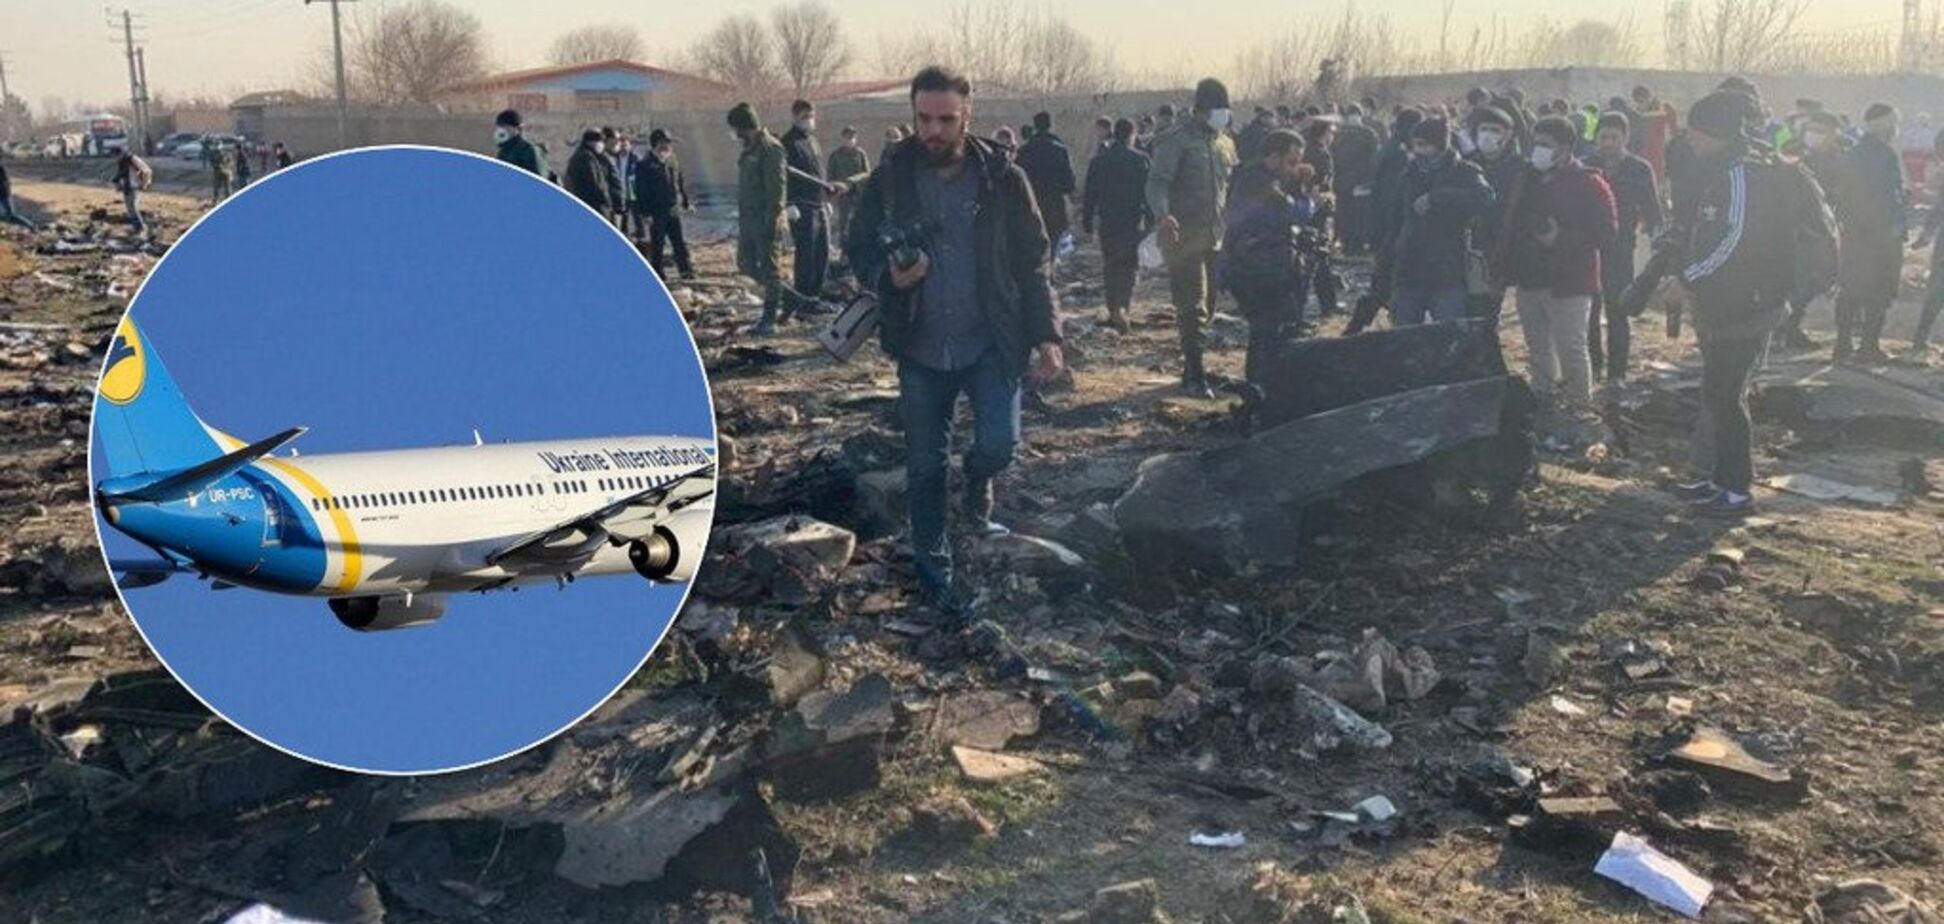 'Не повернуться додому': в Канаду прибув напівпорожній літак з місцями для загиблих в Ірані